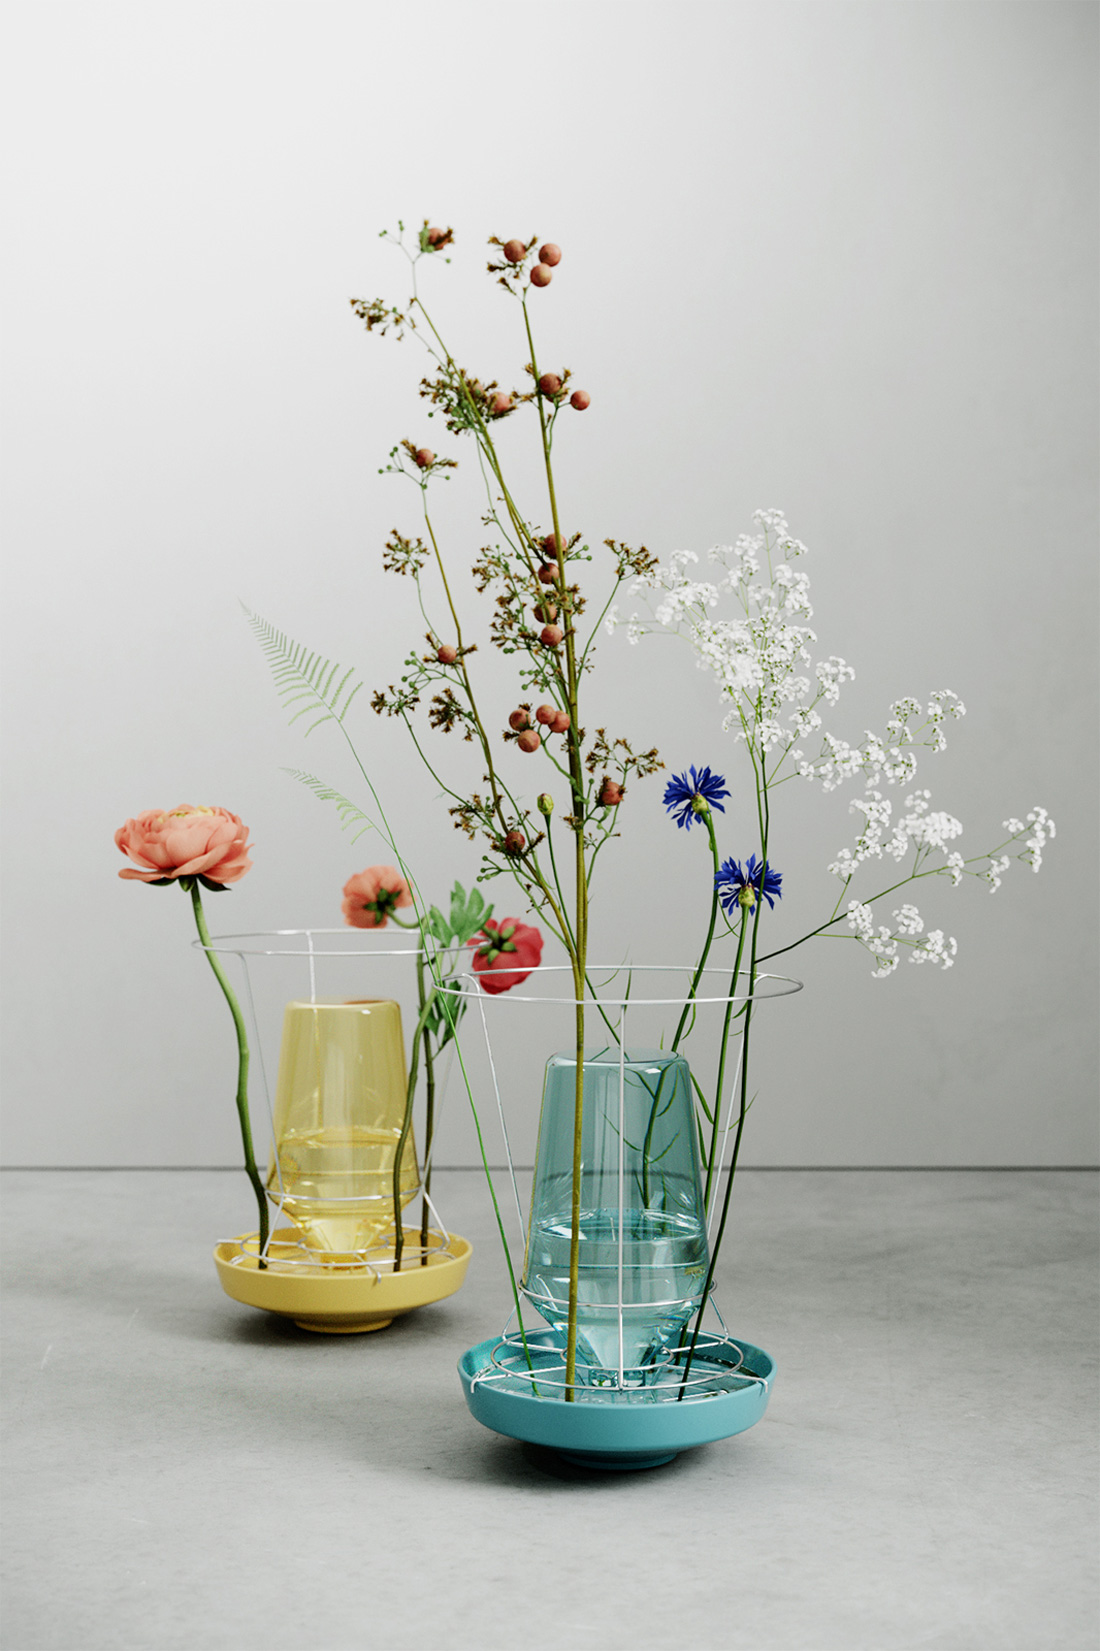 Three unusual vases with flowers